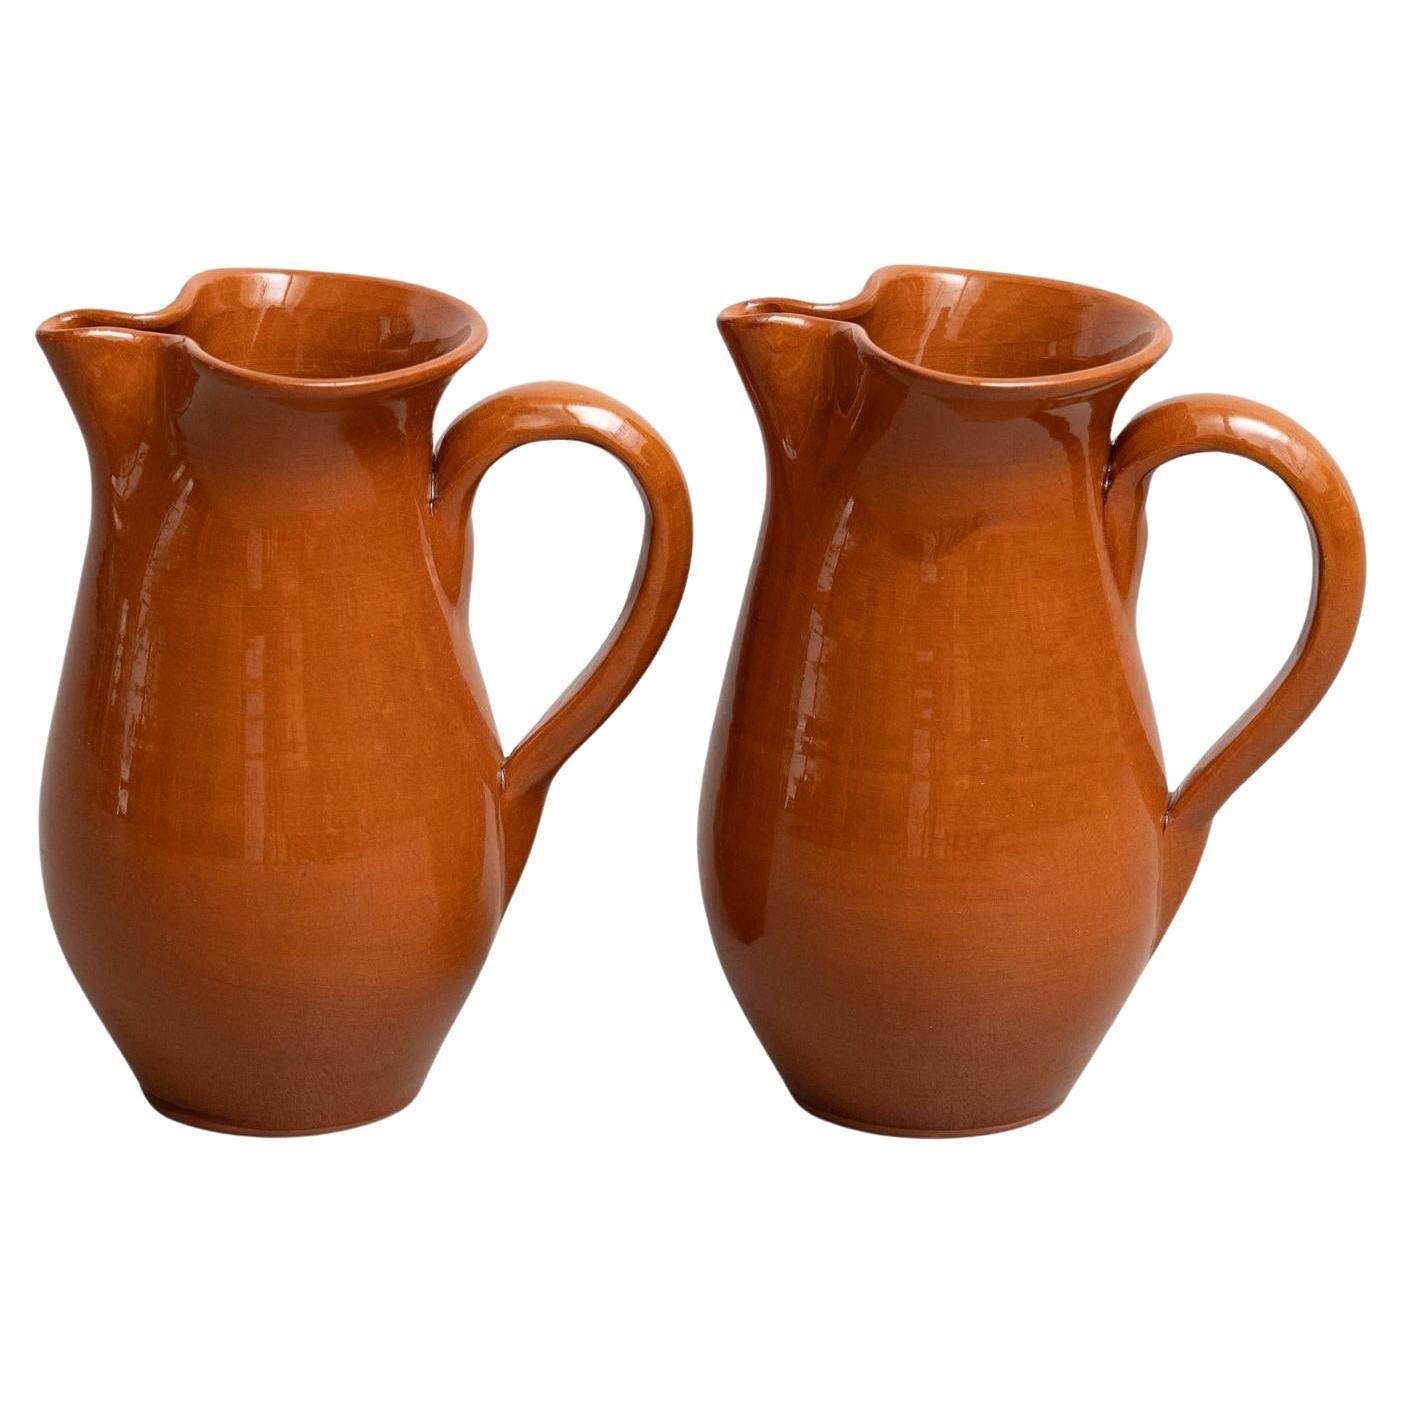 Set von zwei traditionellen spanischen Keramikvasen aus der Mitte des 20. Jahrhunderts